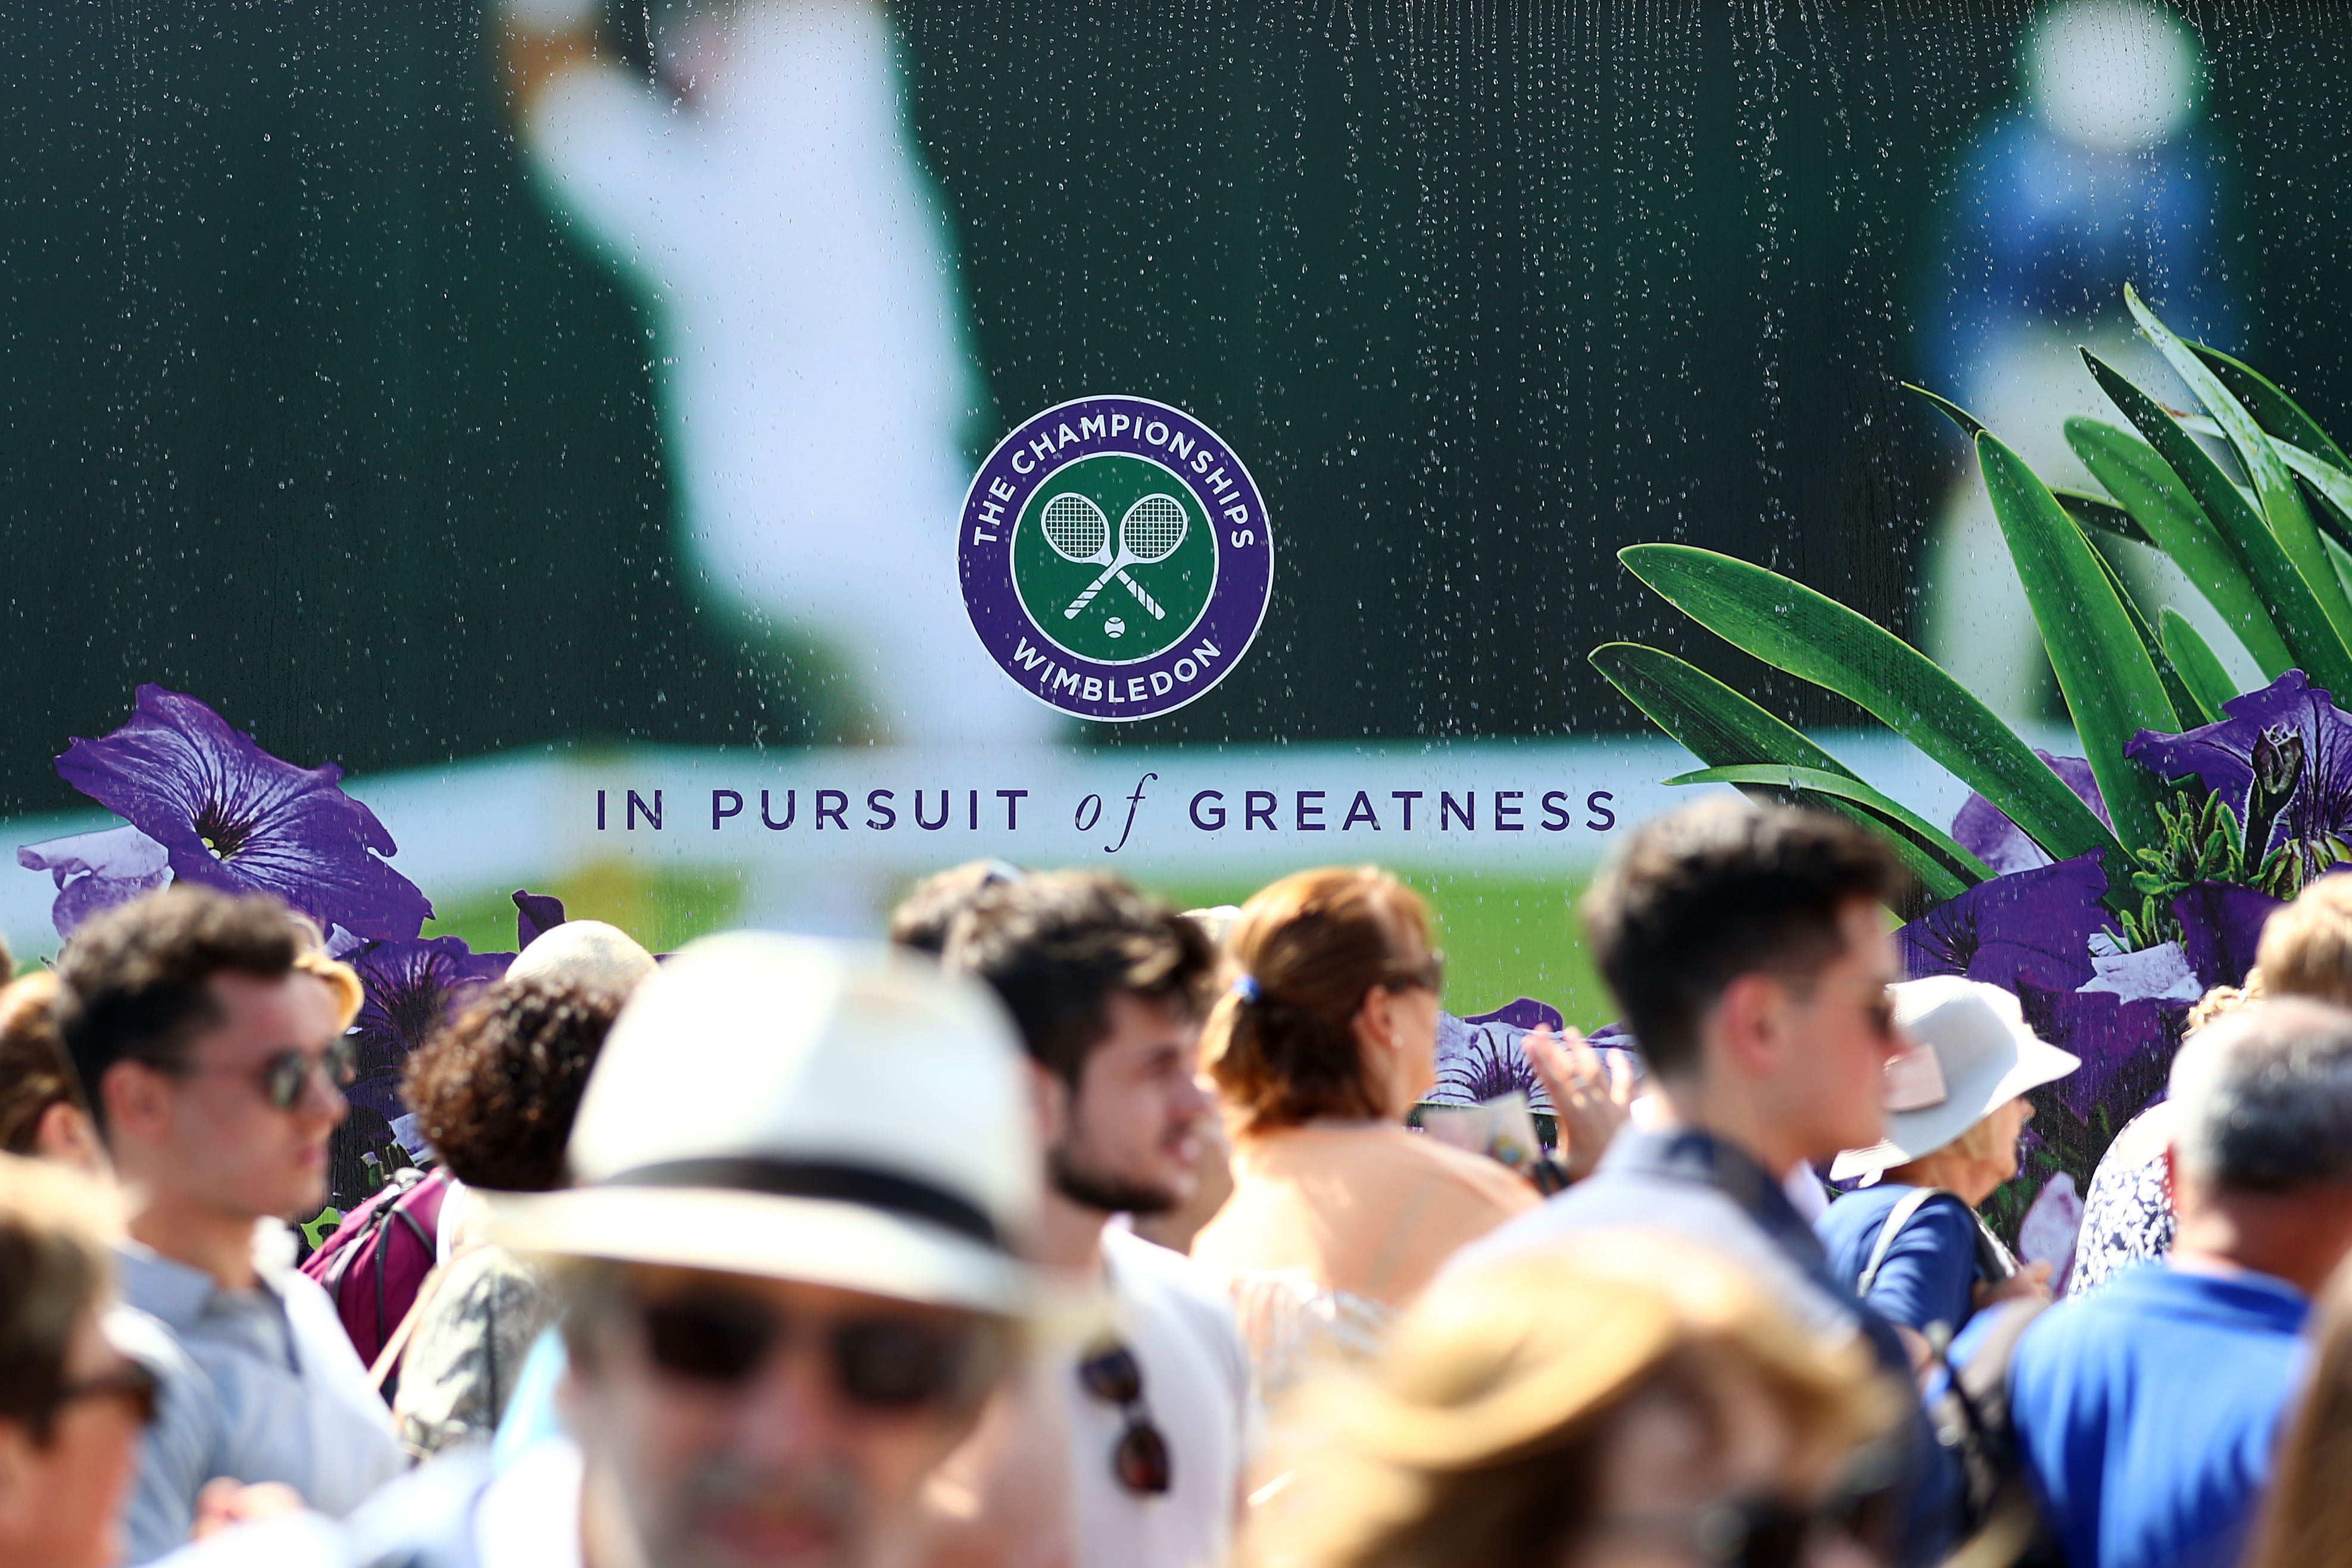 Wimbledon Embraces Web, Plans Online Public Ballot, FT Reports